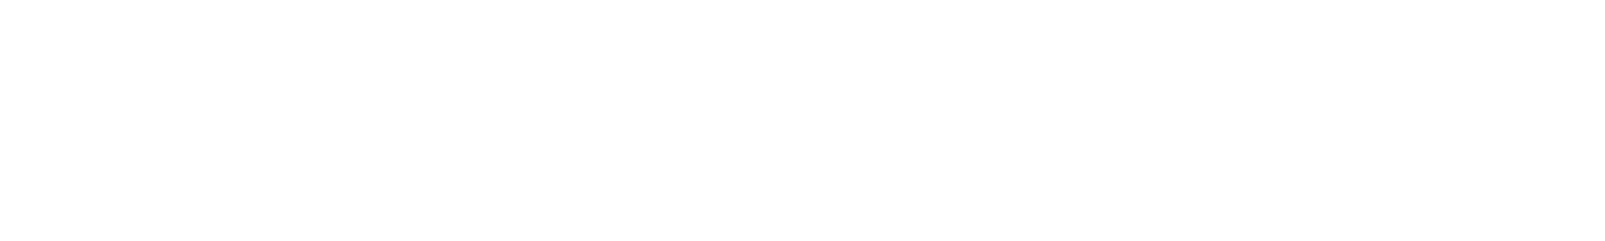 Randstad
 logo large for dark backgrounds (transparent PNG)